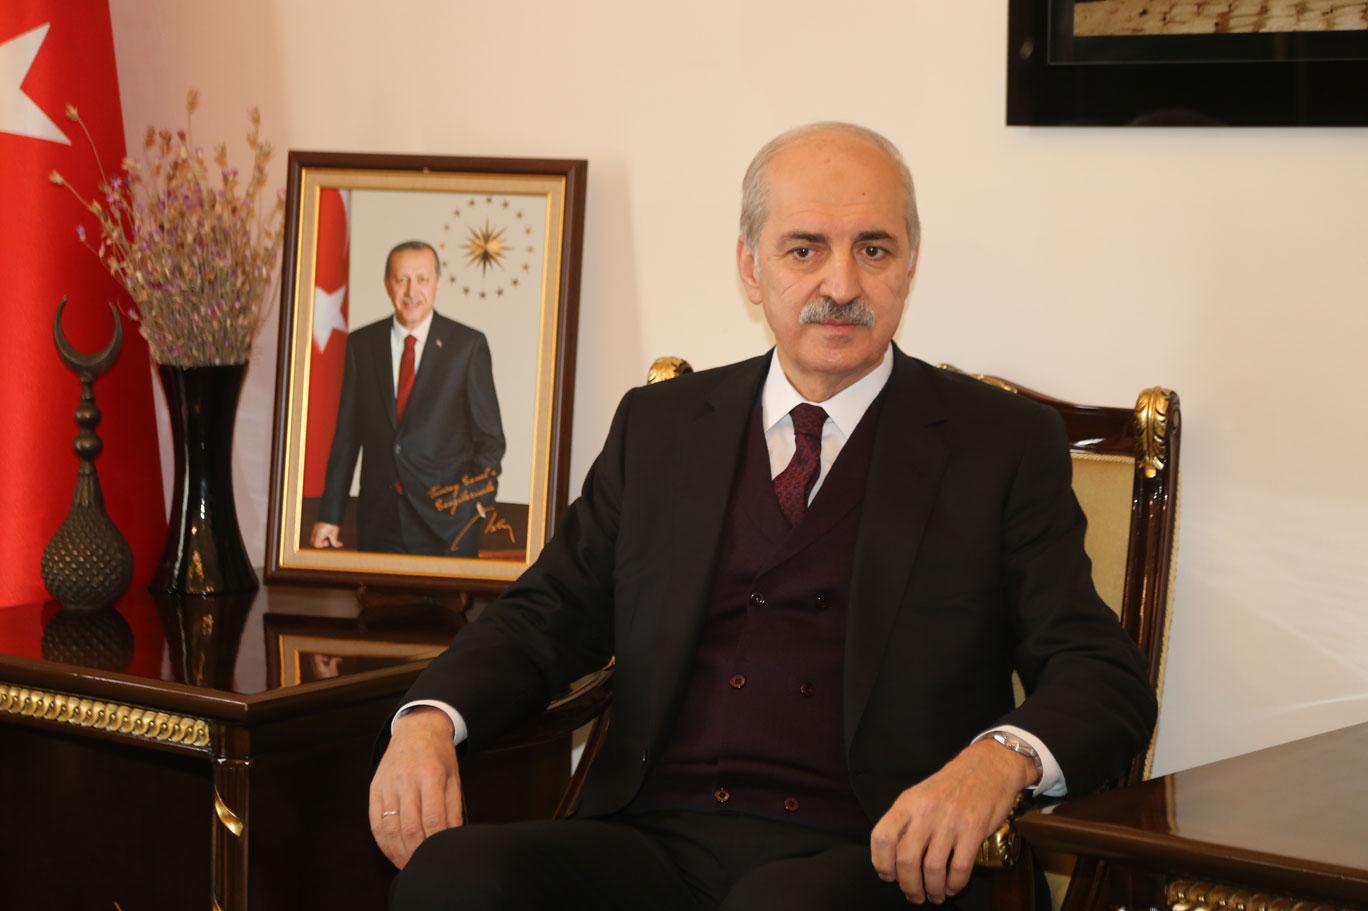 AK Parti Genel Başkanvekili Numan Kurtulmuş cevapladı Sinan Oğan'la görüşme olacak mı?